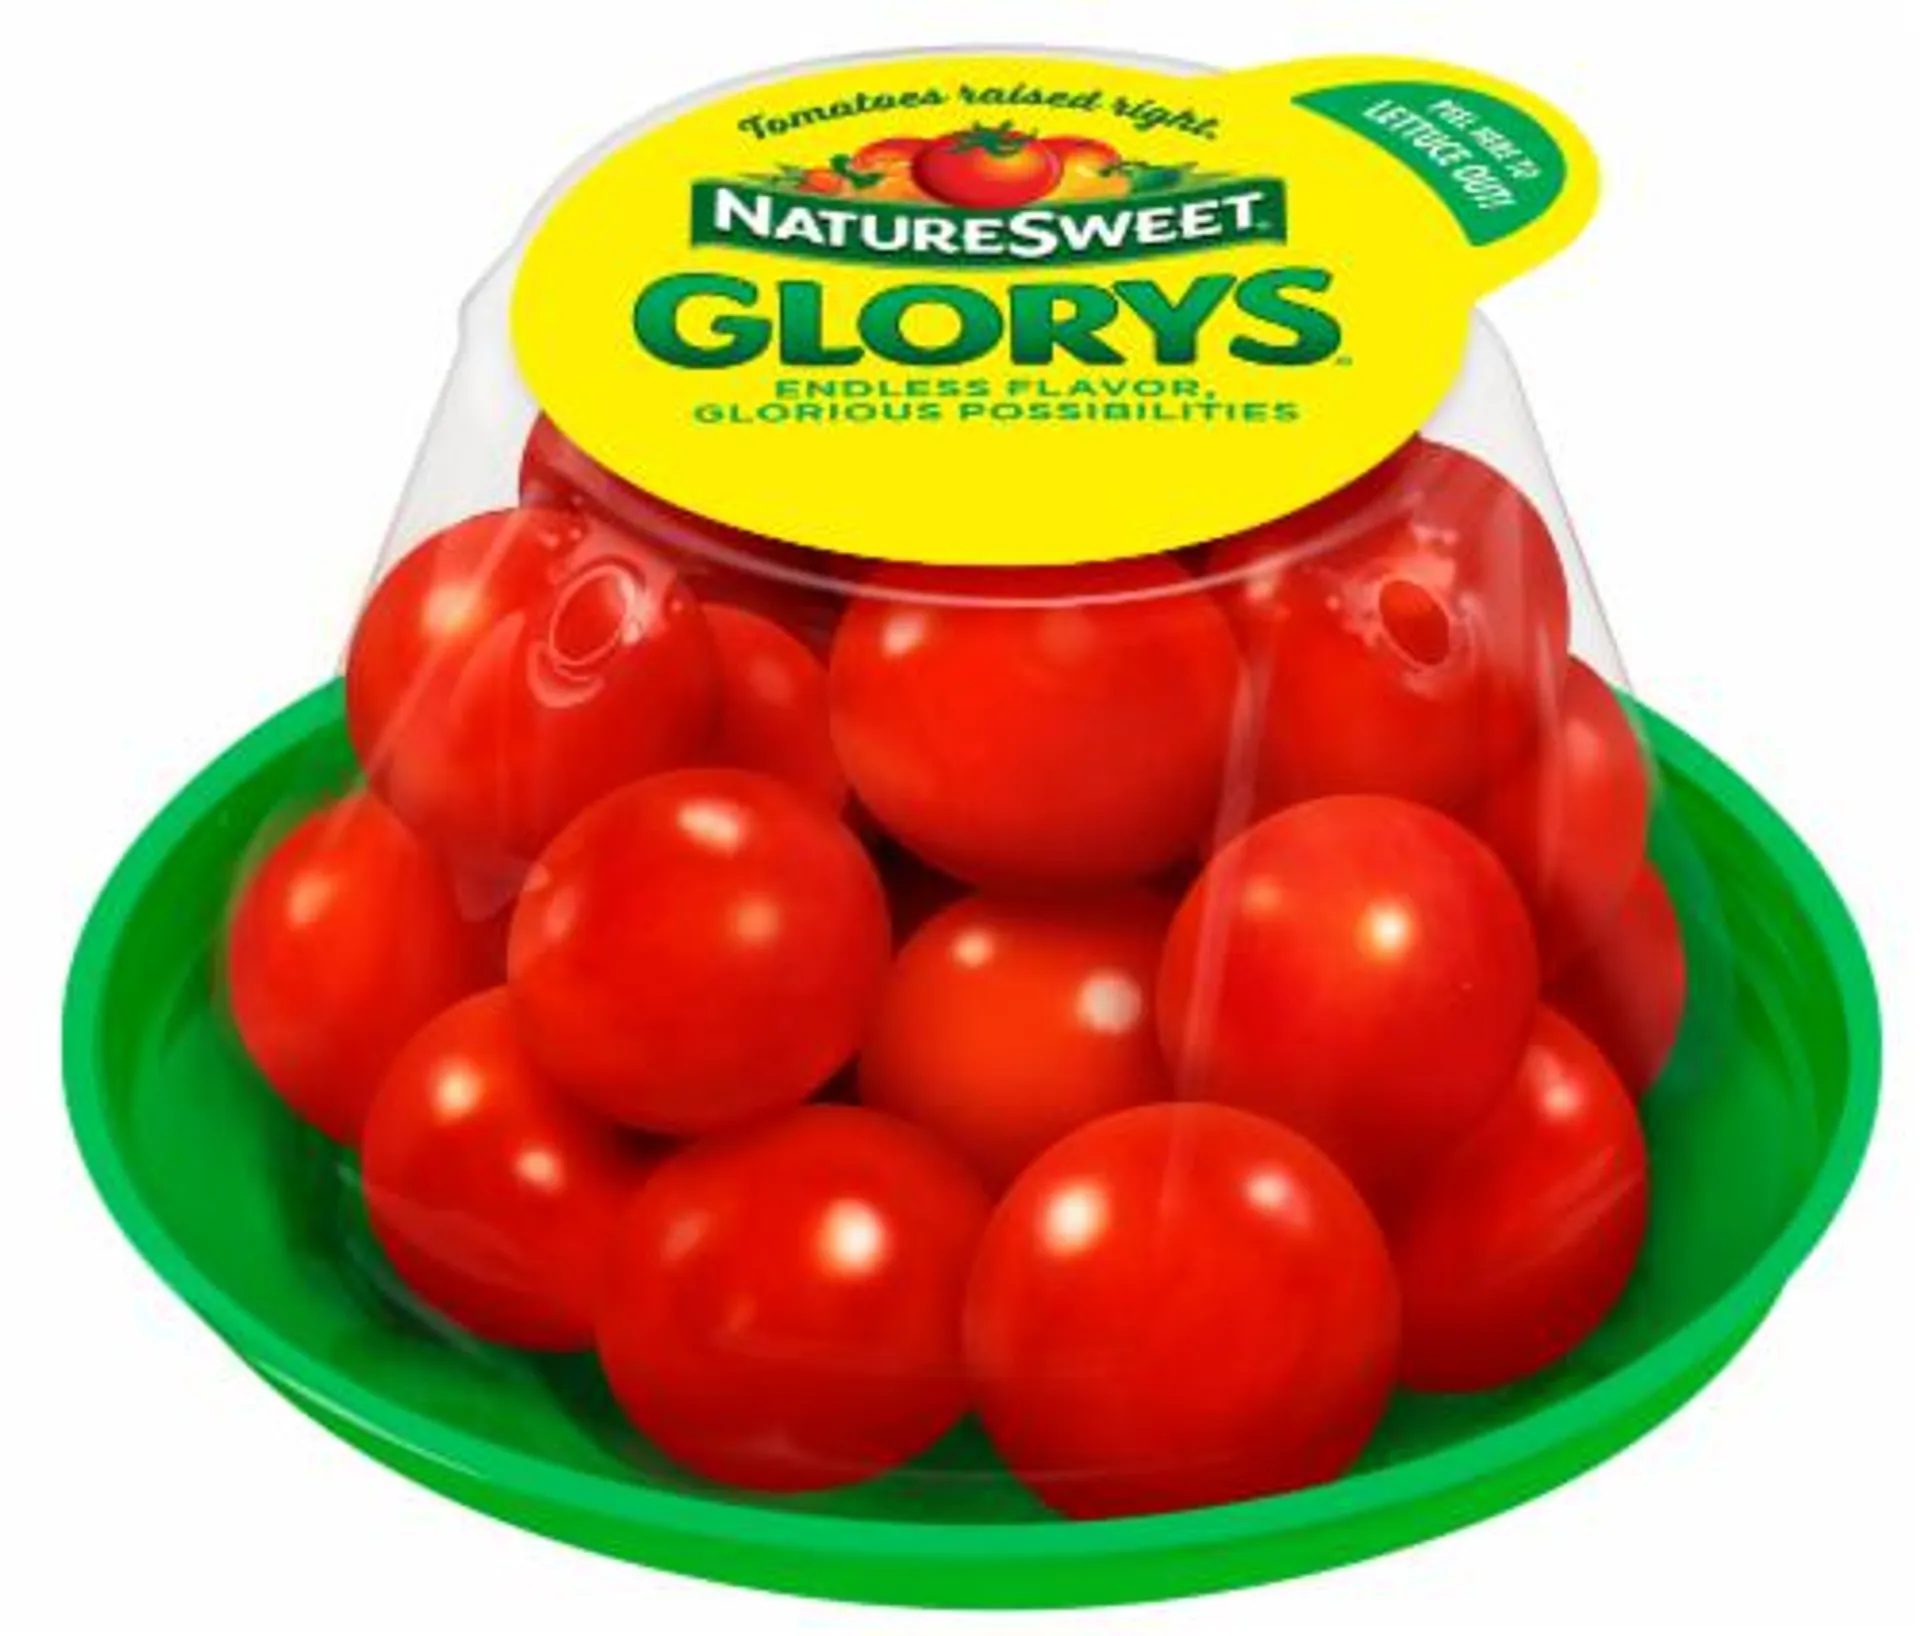 NatureSweet Glorys® Cherry Tomatoes